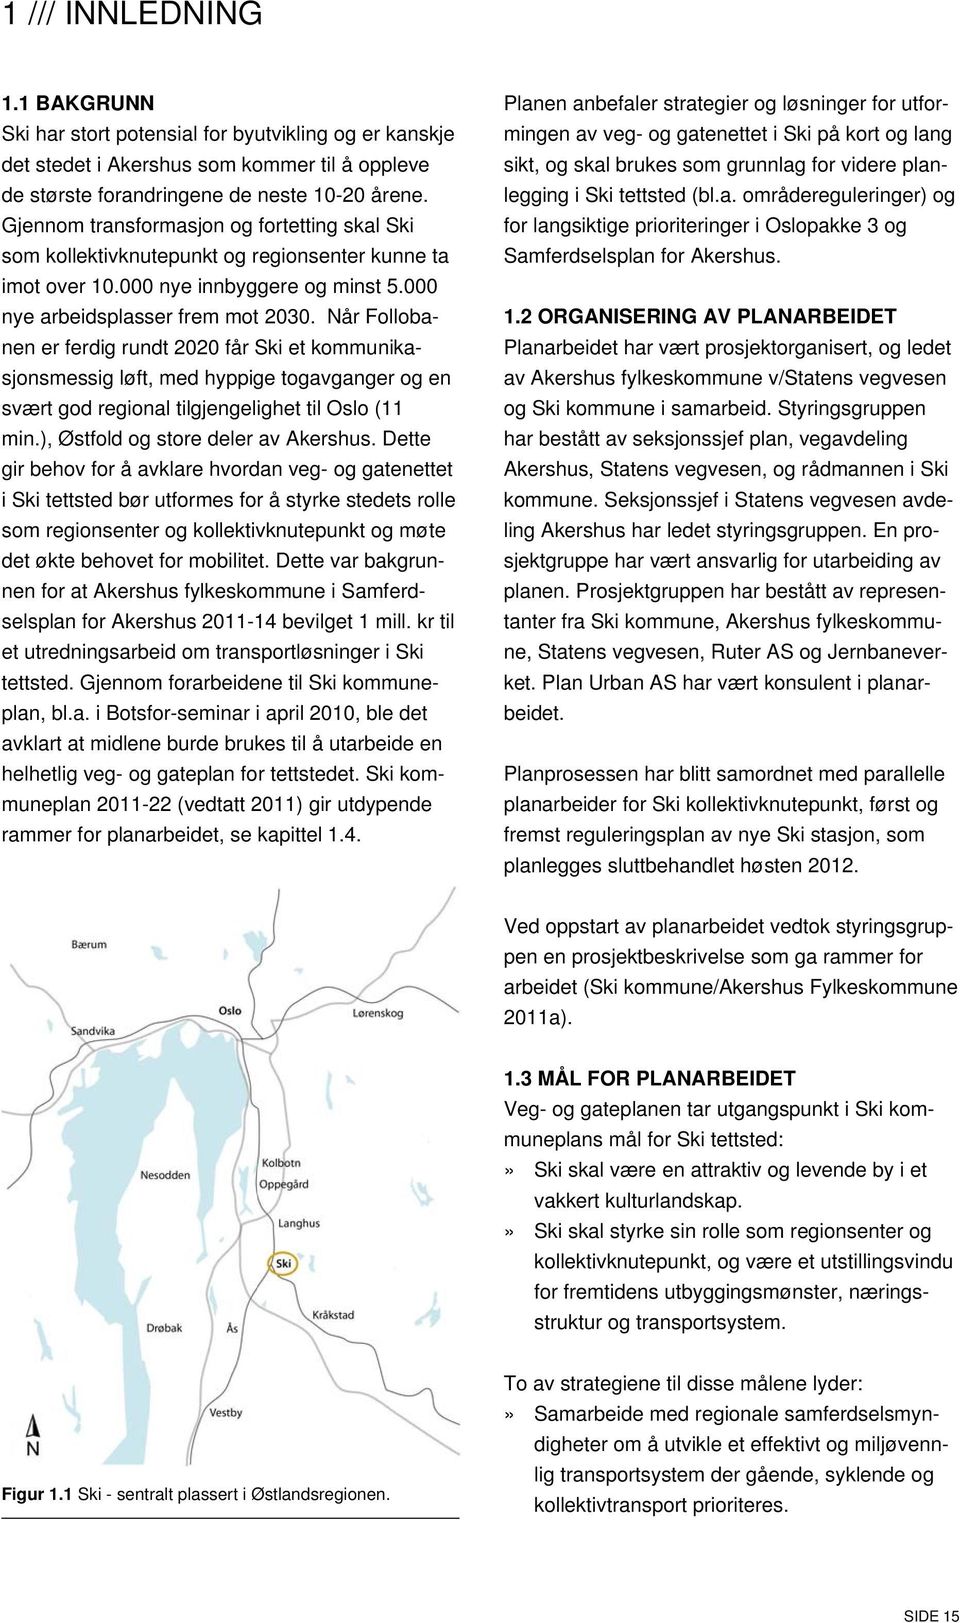 Når Follobanen er ferdig rundt 2020 får Ski et kommunikasjonsmessig løft, med hyppige togavganger og en svært god regional tilgjengelighet til Oslo (11 min.), Østfold og store deler av Akershus.